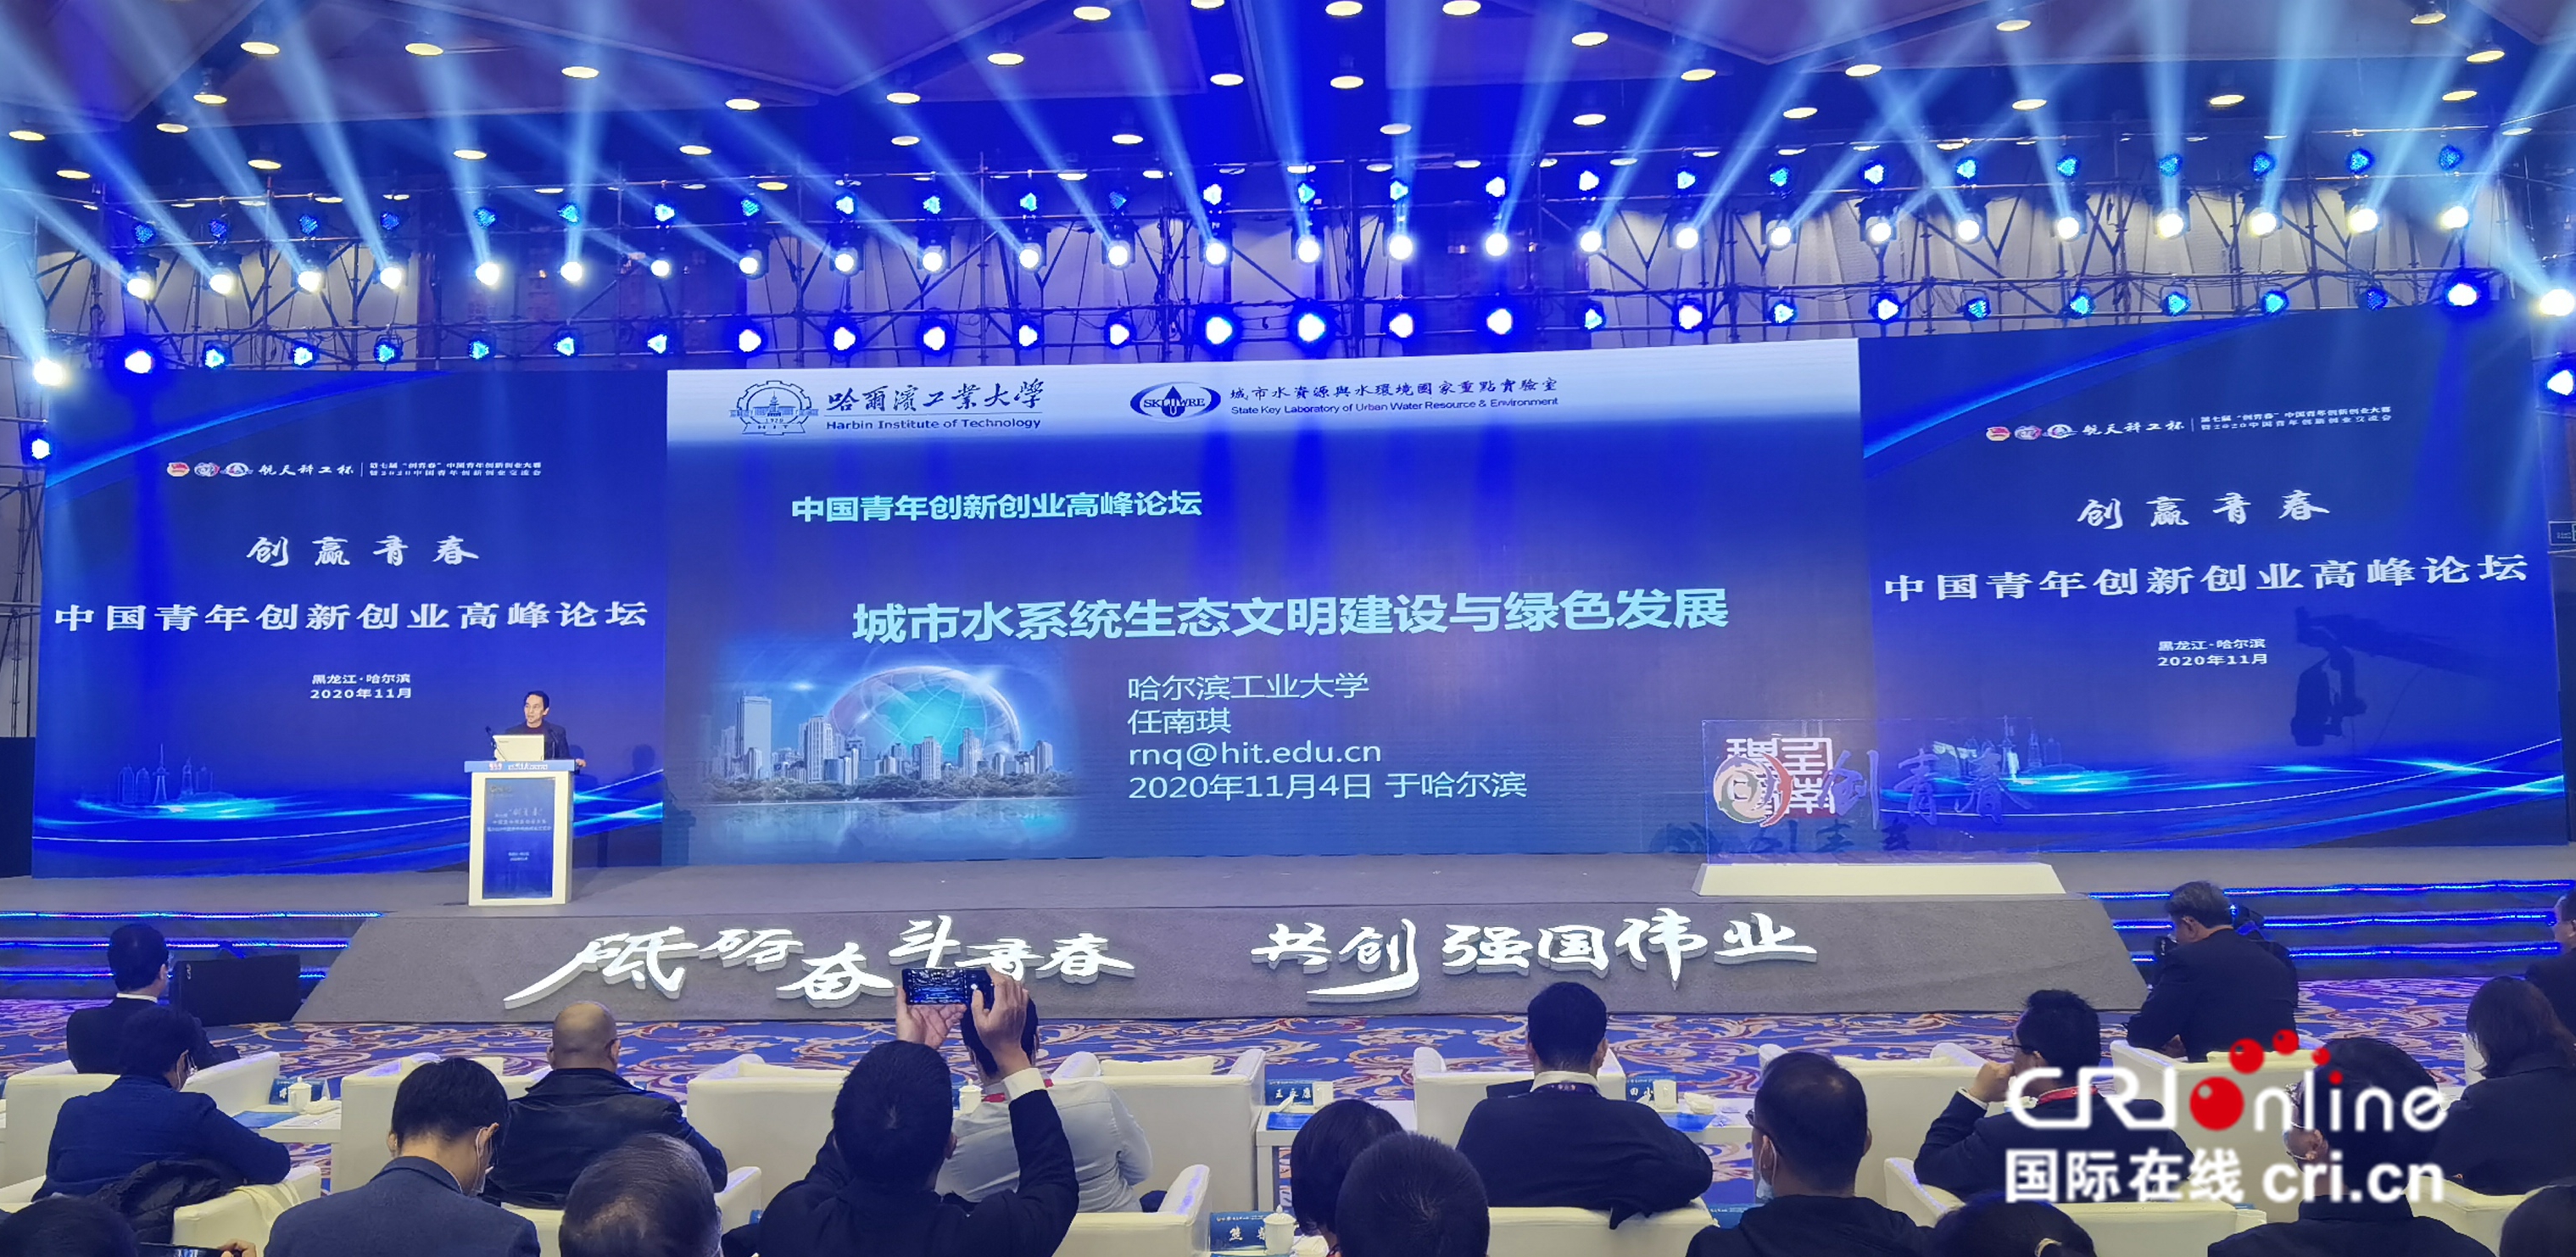 共话创新创业 共谋青年发展 “创赢青春”中国青年创新创业高峰论坛在哈尔滨举行